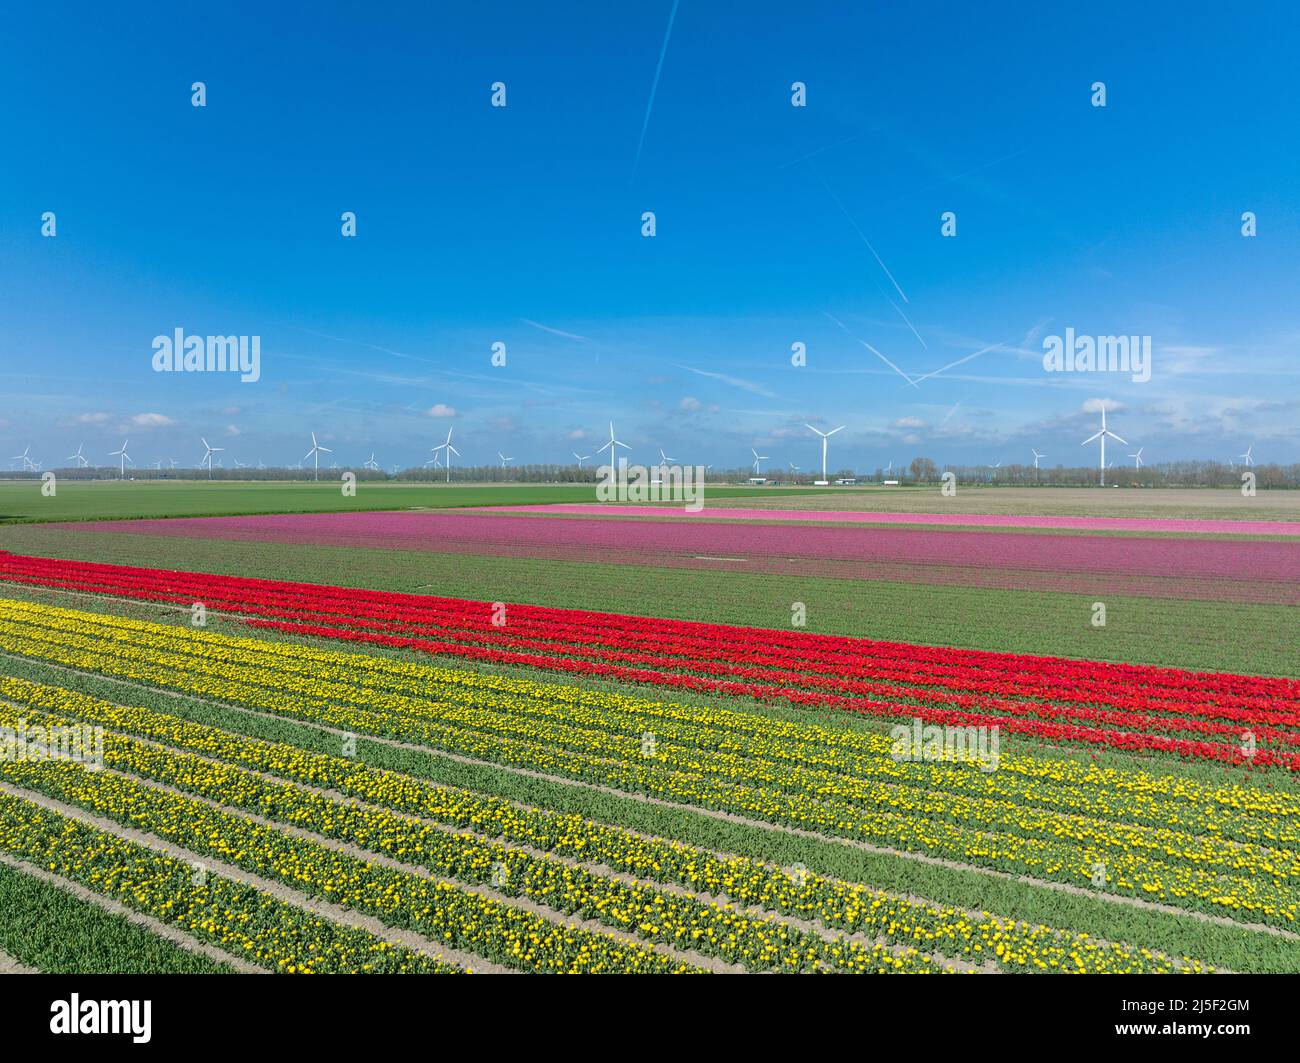 File di tulipani gialli, rossi e rosa a Flevoland Paesi Bassi con turbine eoliche che girano all'orizzonte, vista aerea. Foto Stock